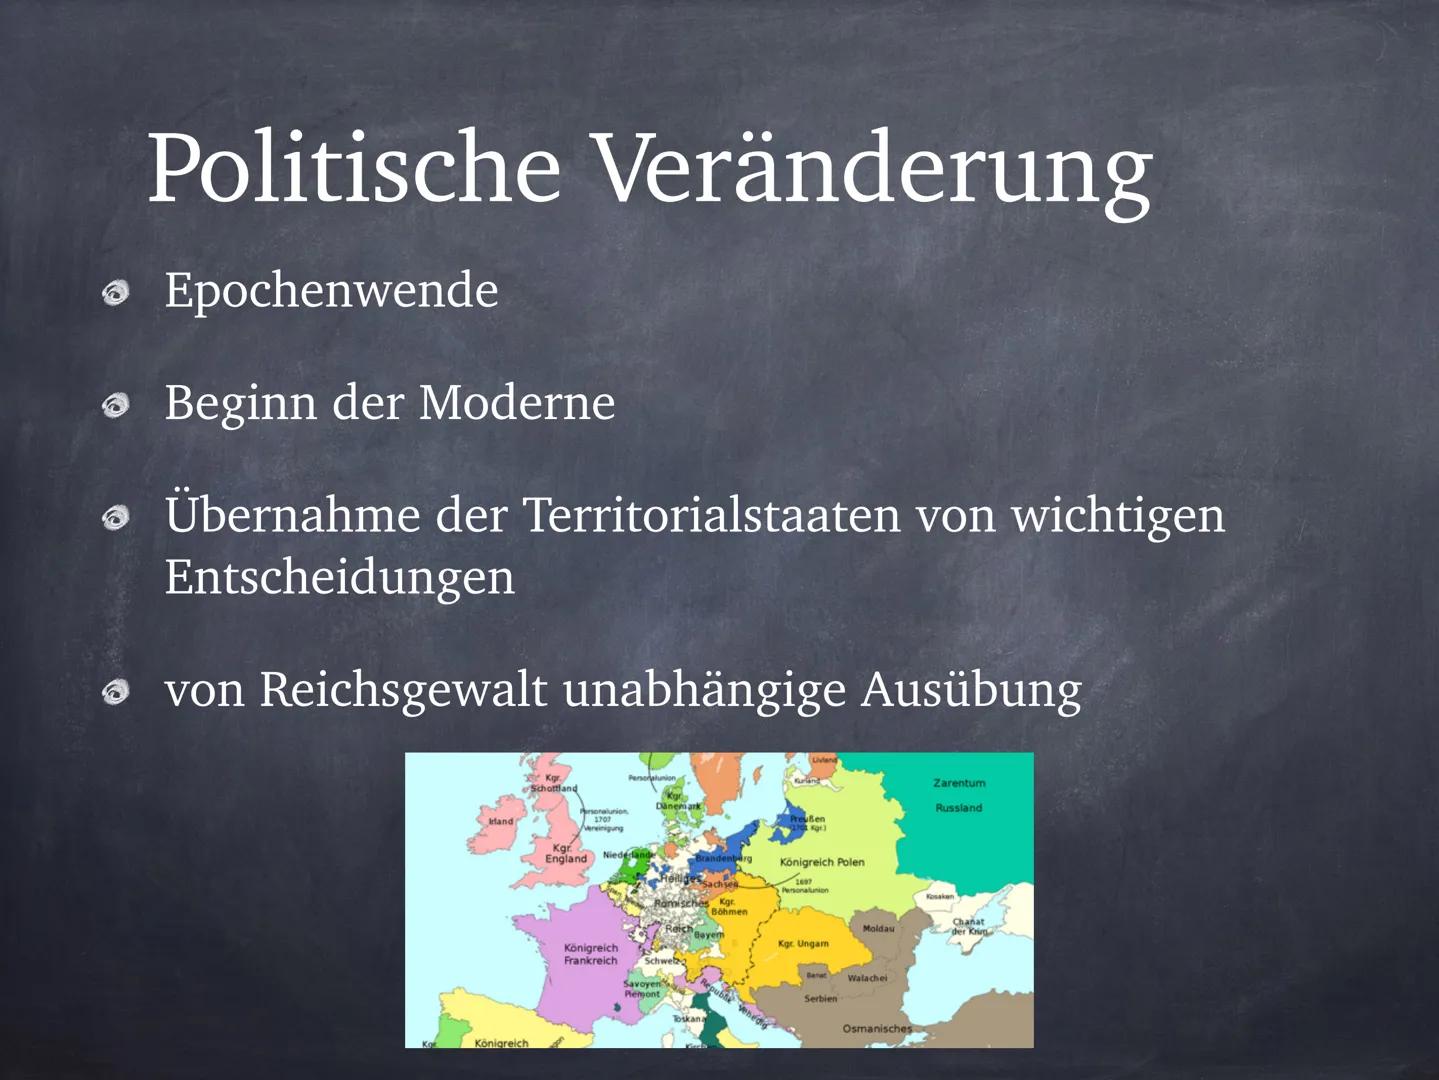 Veränderungen im 18. Jahrhundert
Politik:
Ausgangslage:
Reichsgewalt beim Kaiser
Parzellierung des Reichsgebiets
Absolutismus
Literatur:
Aus